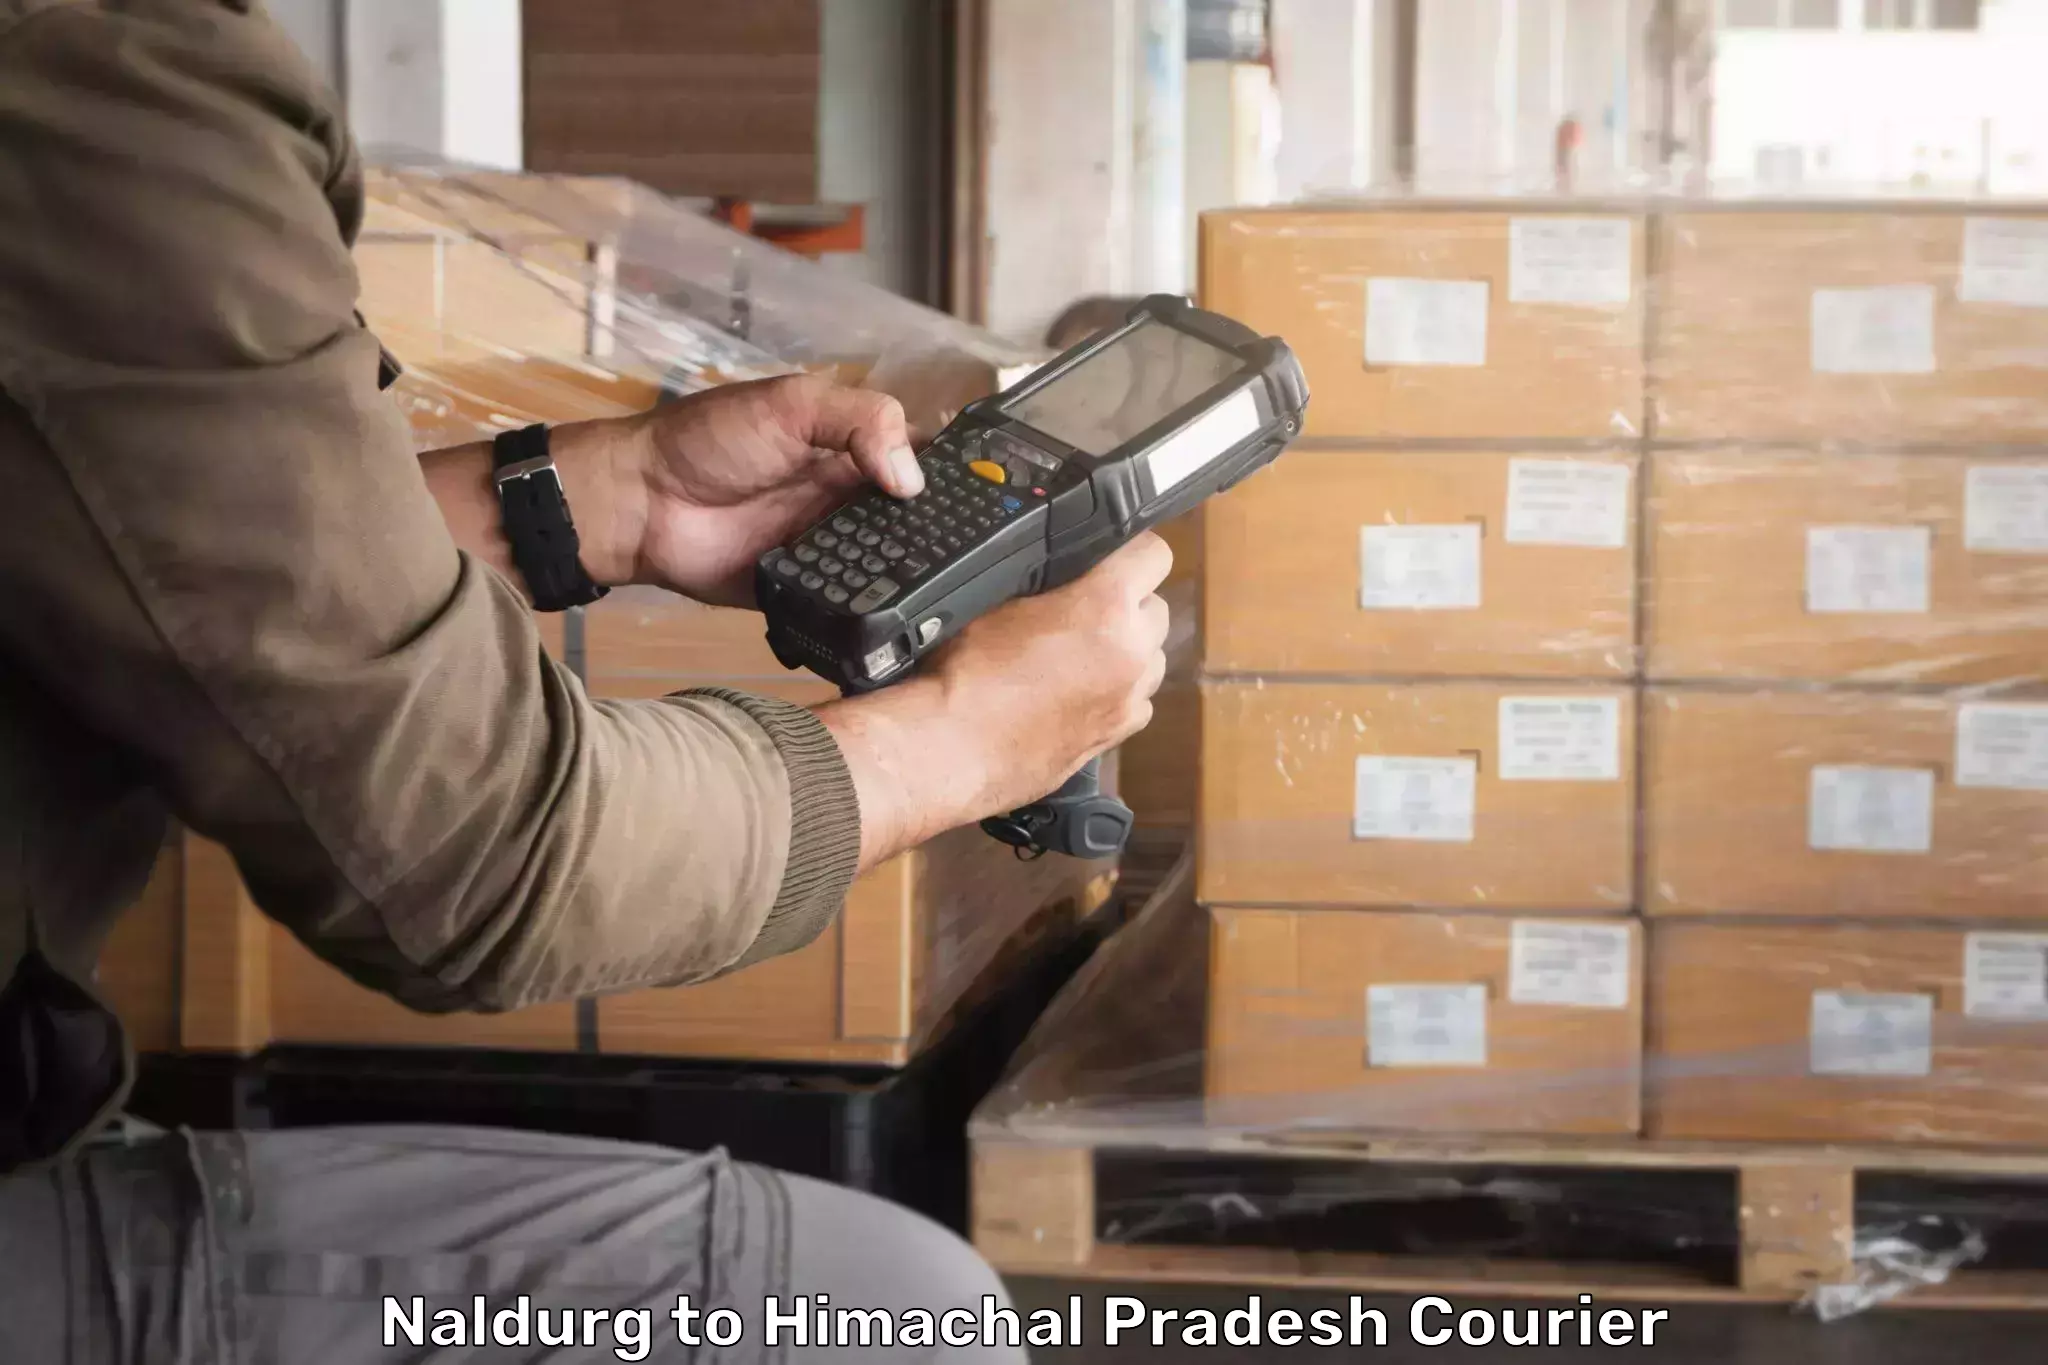 User-friendly delivery service Naldurg to Nerwa